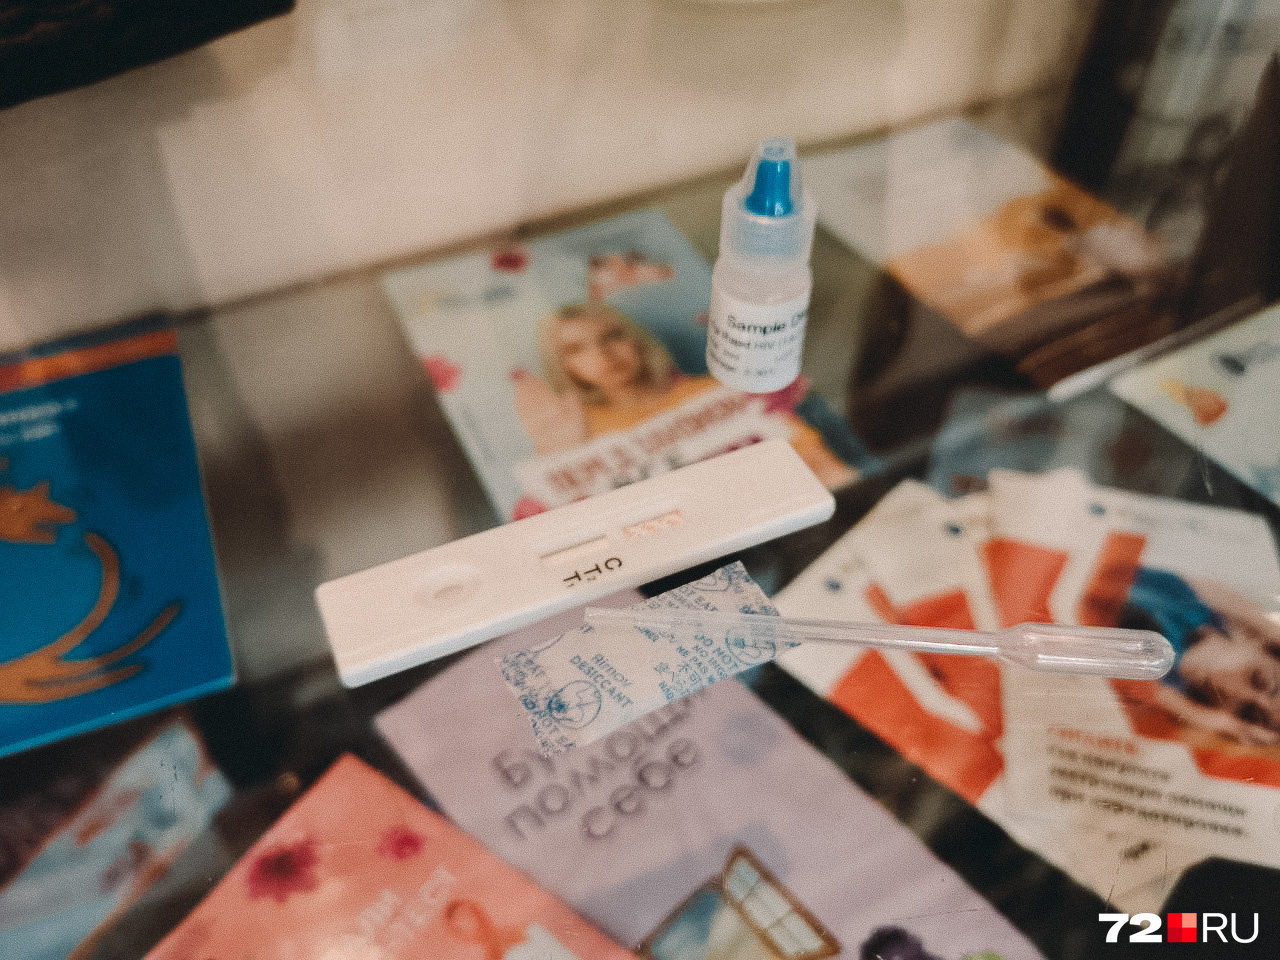 Тесты на ВИЧ похожи на те, что покупают женщины для проверки беременности